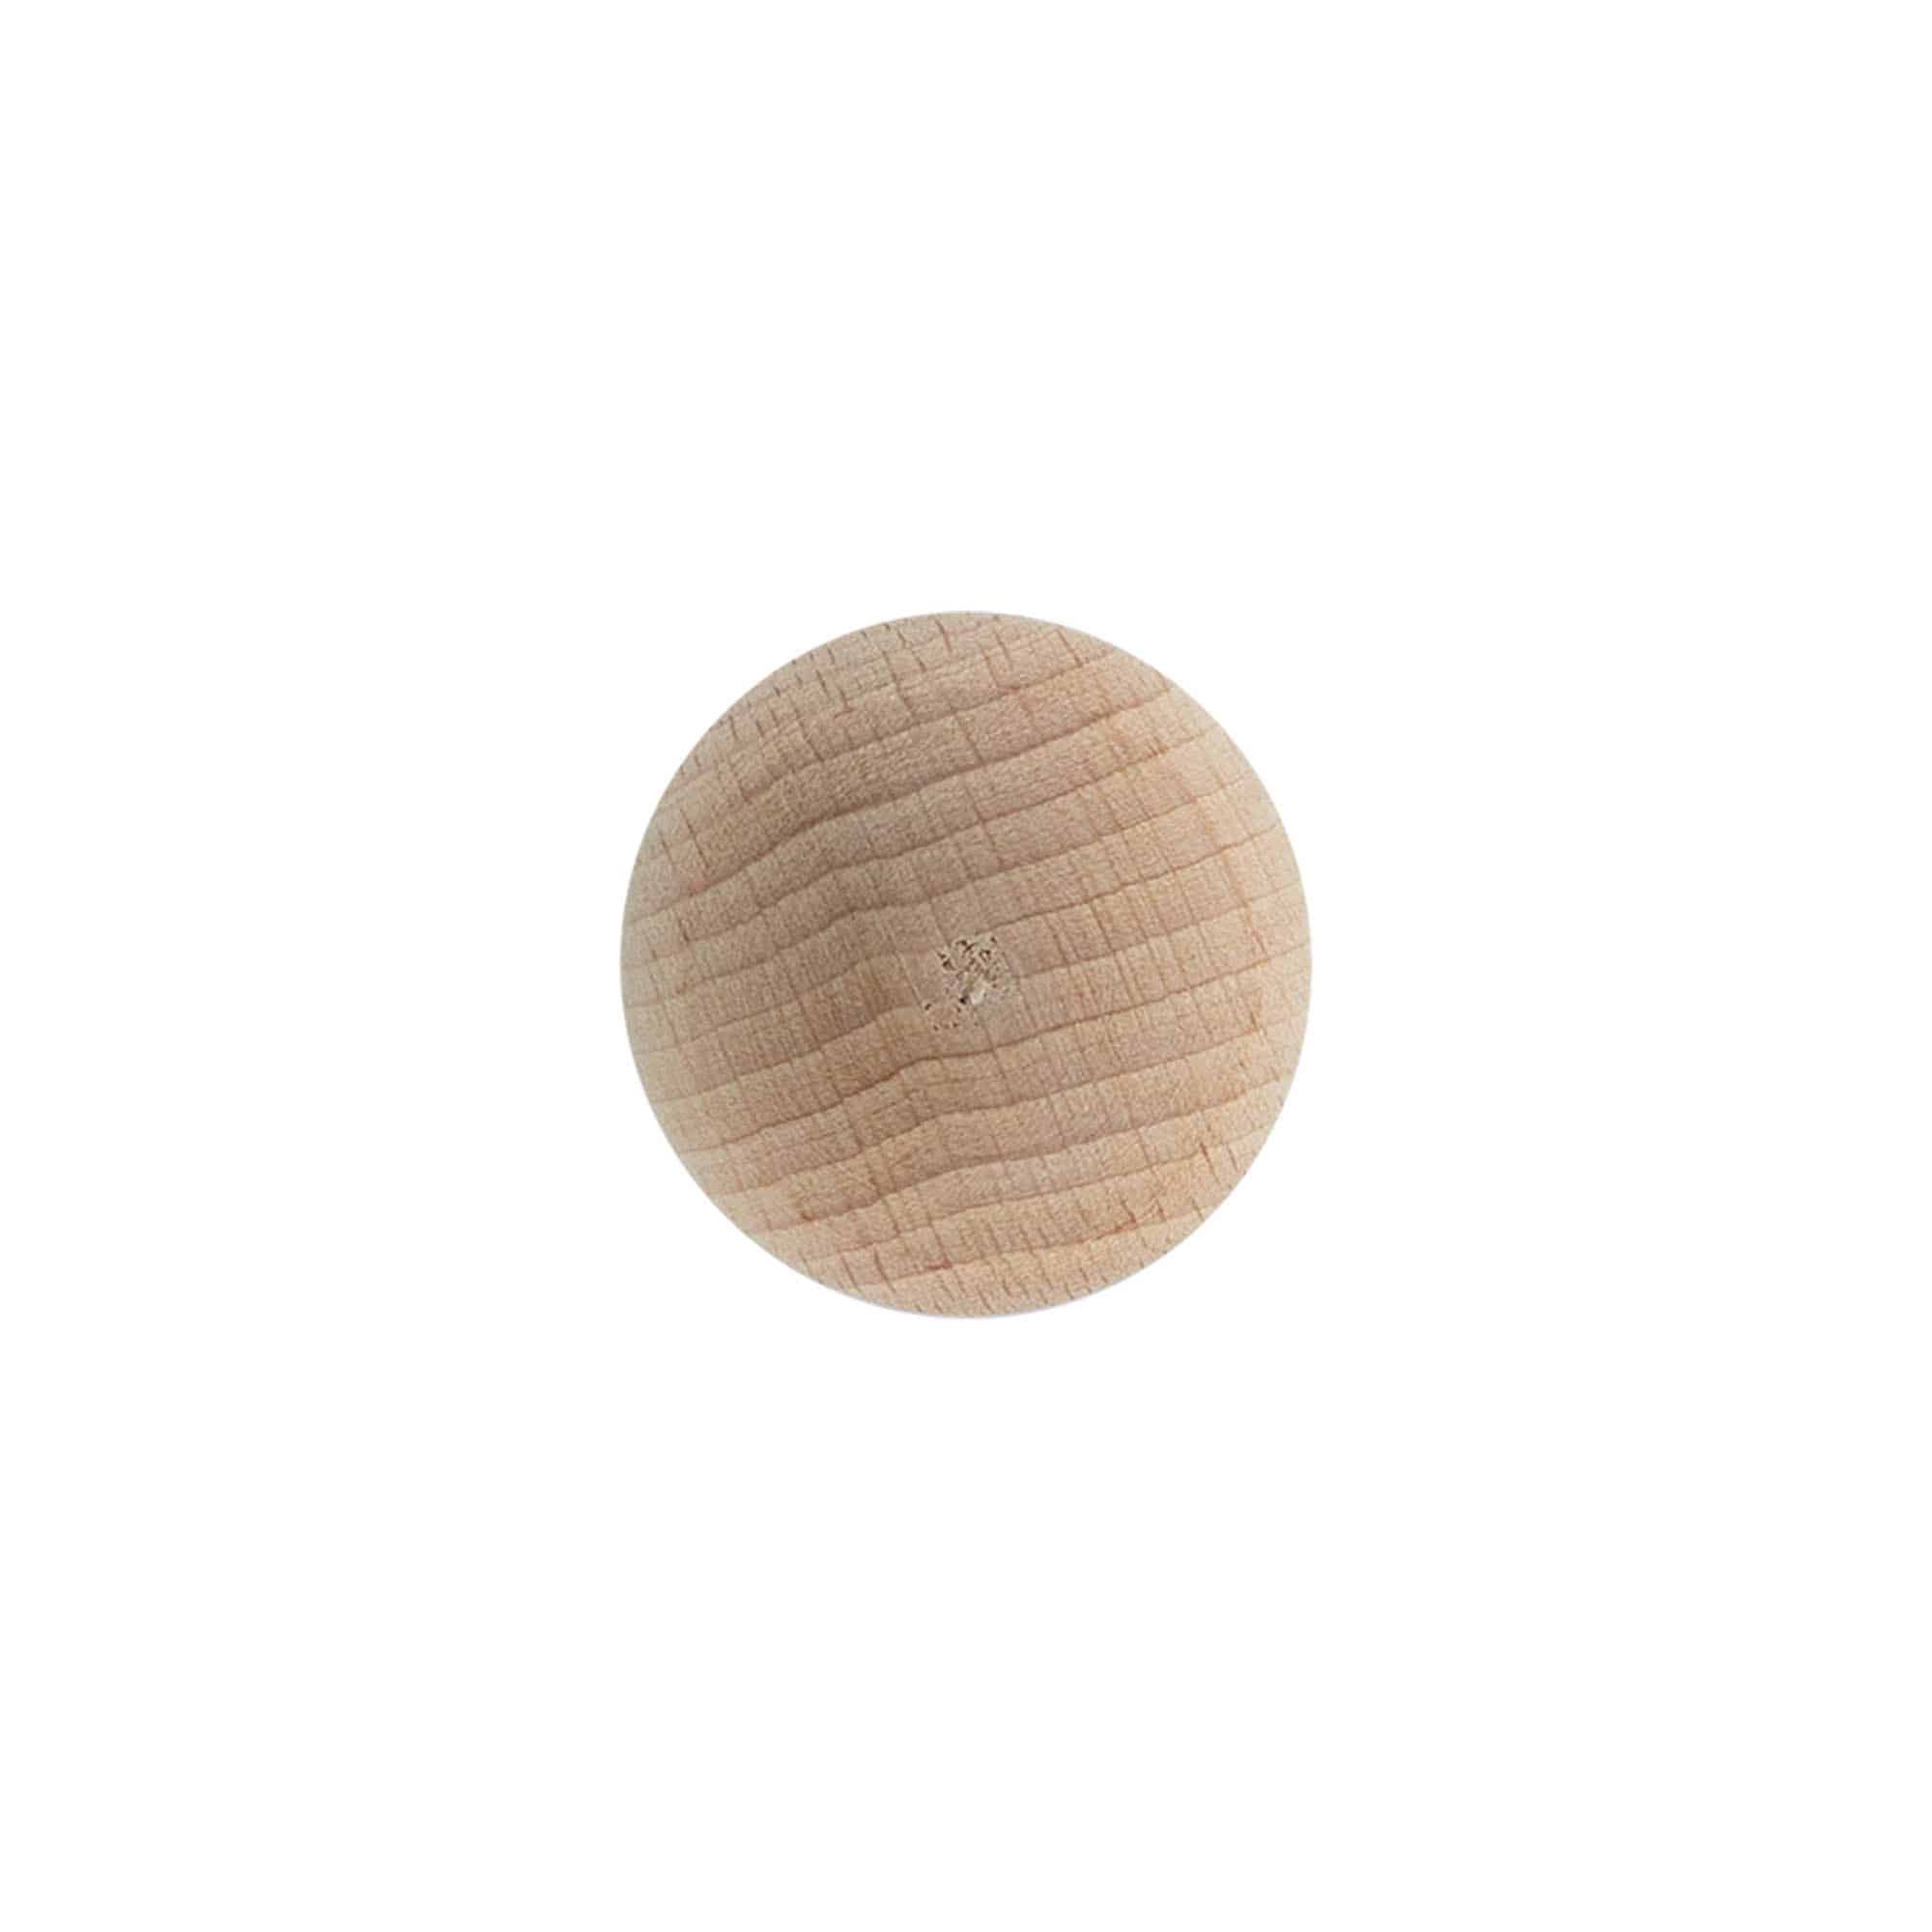 Bouchon à poignée 19 mm 'Sphère', bois, pour bouchage: bouchon